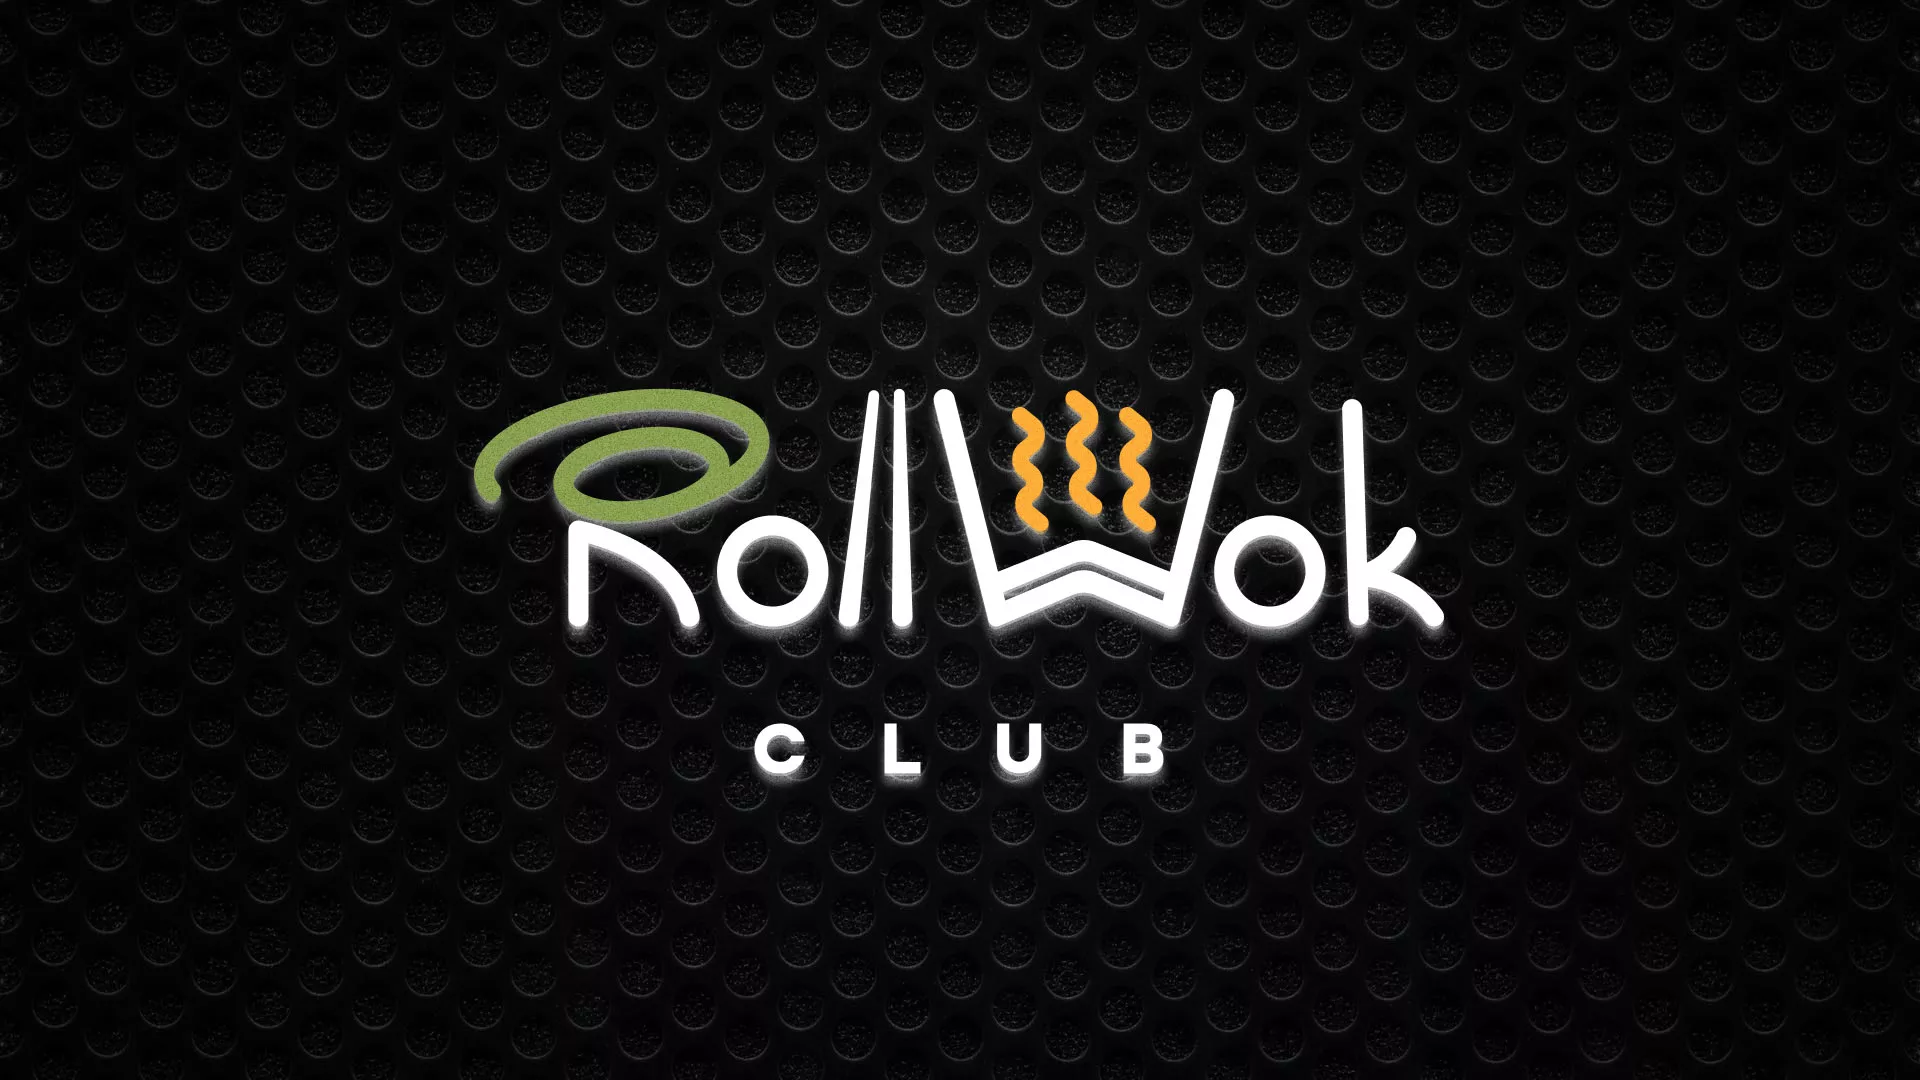 Брендирование торговых точек суши-бара «Roll Wok Club» в Кондопоге